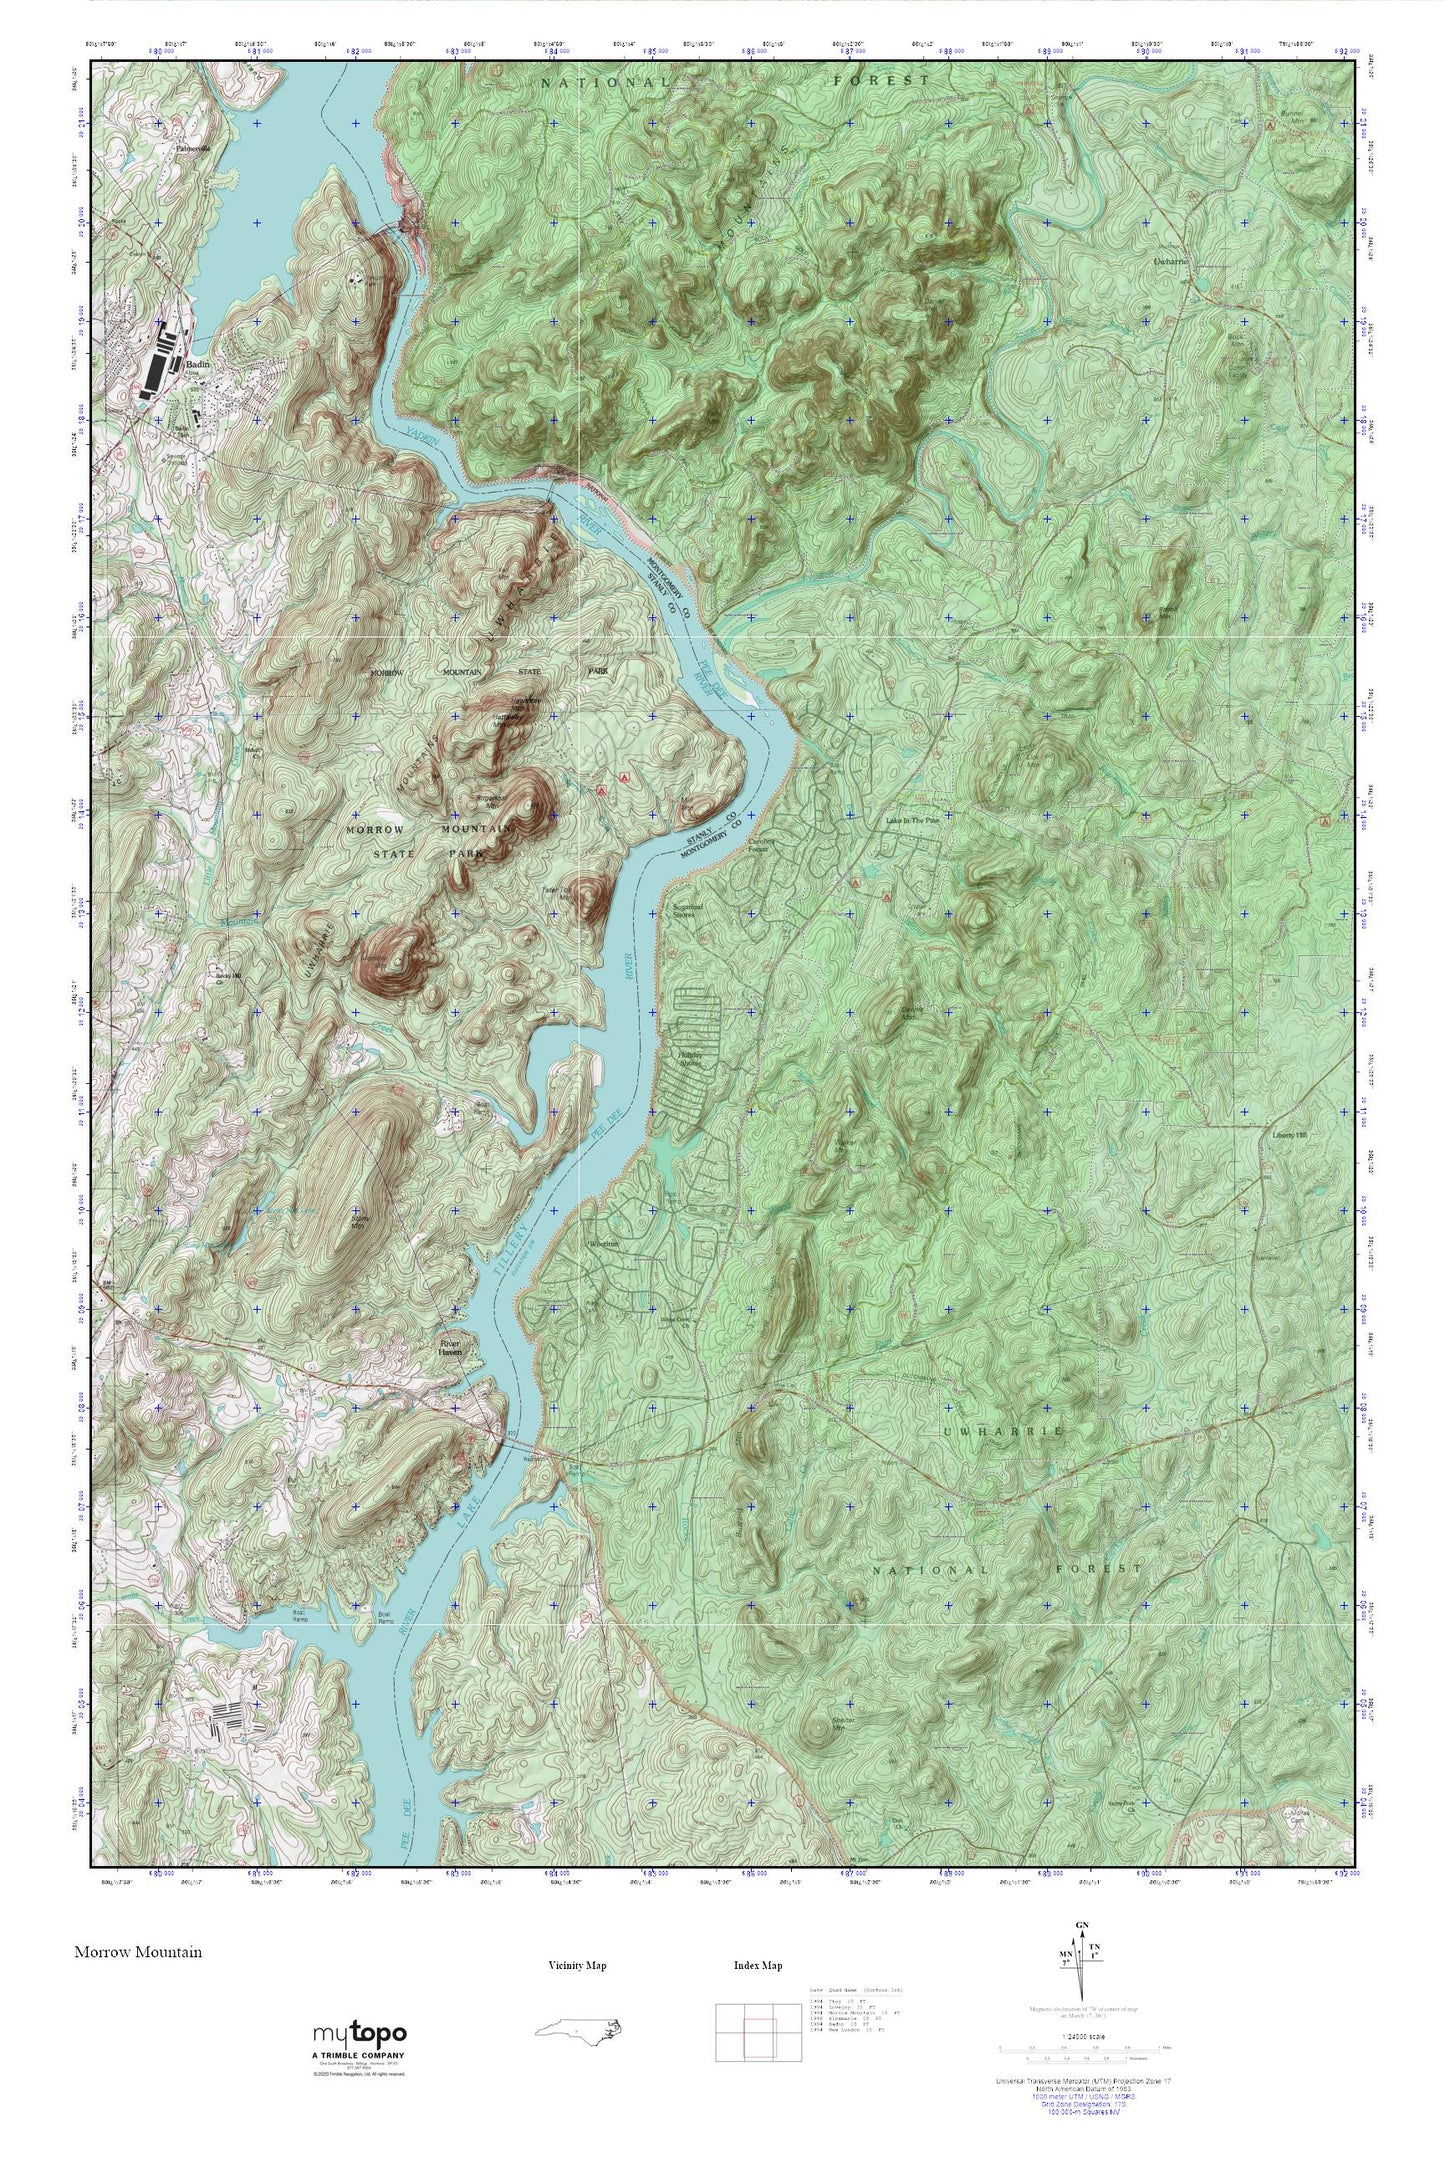 Morrow Mountain MyTopo Explorer Series Map Image